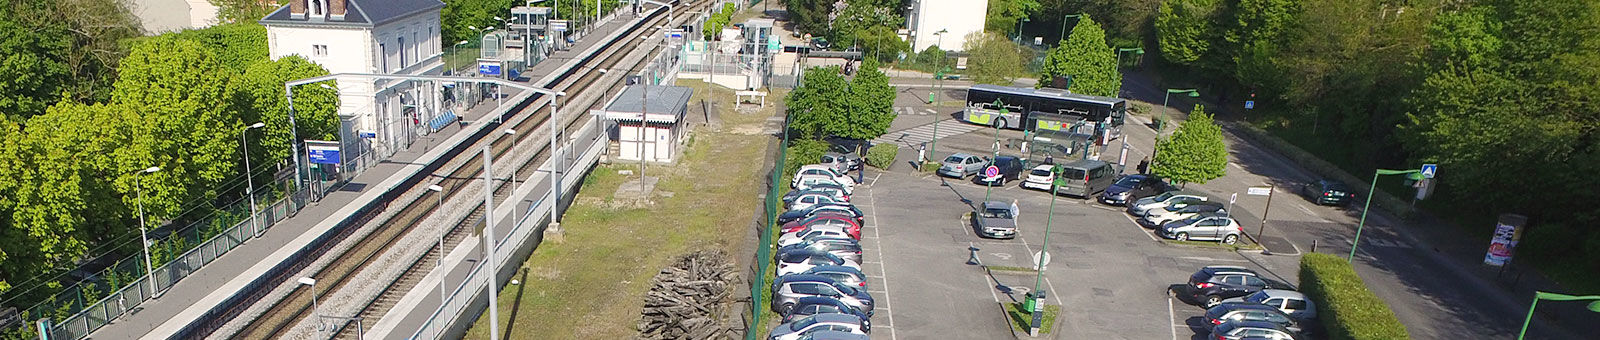 Parking de la gare du RER B de Gif-sur-Yvette.